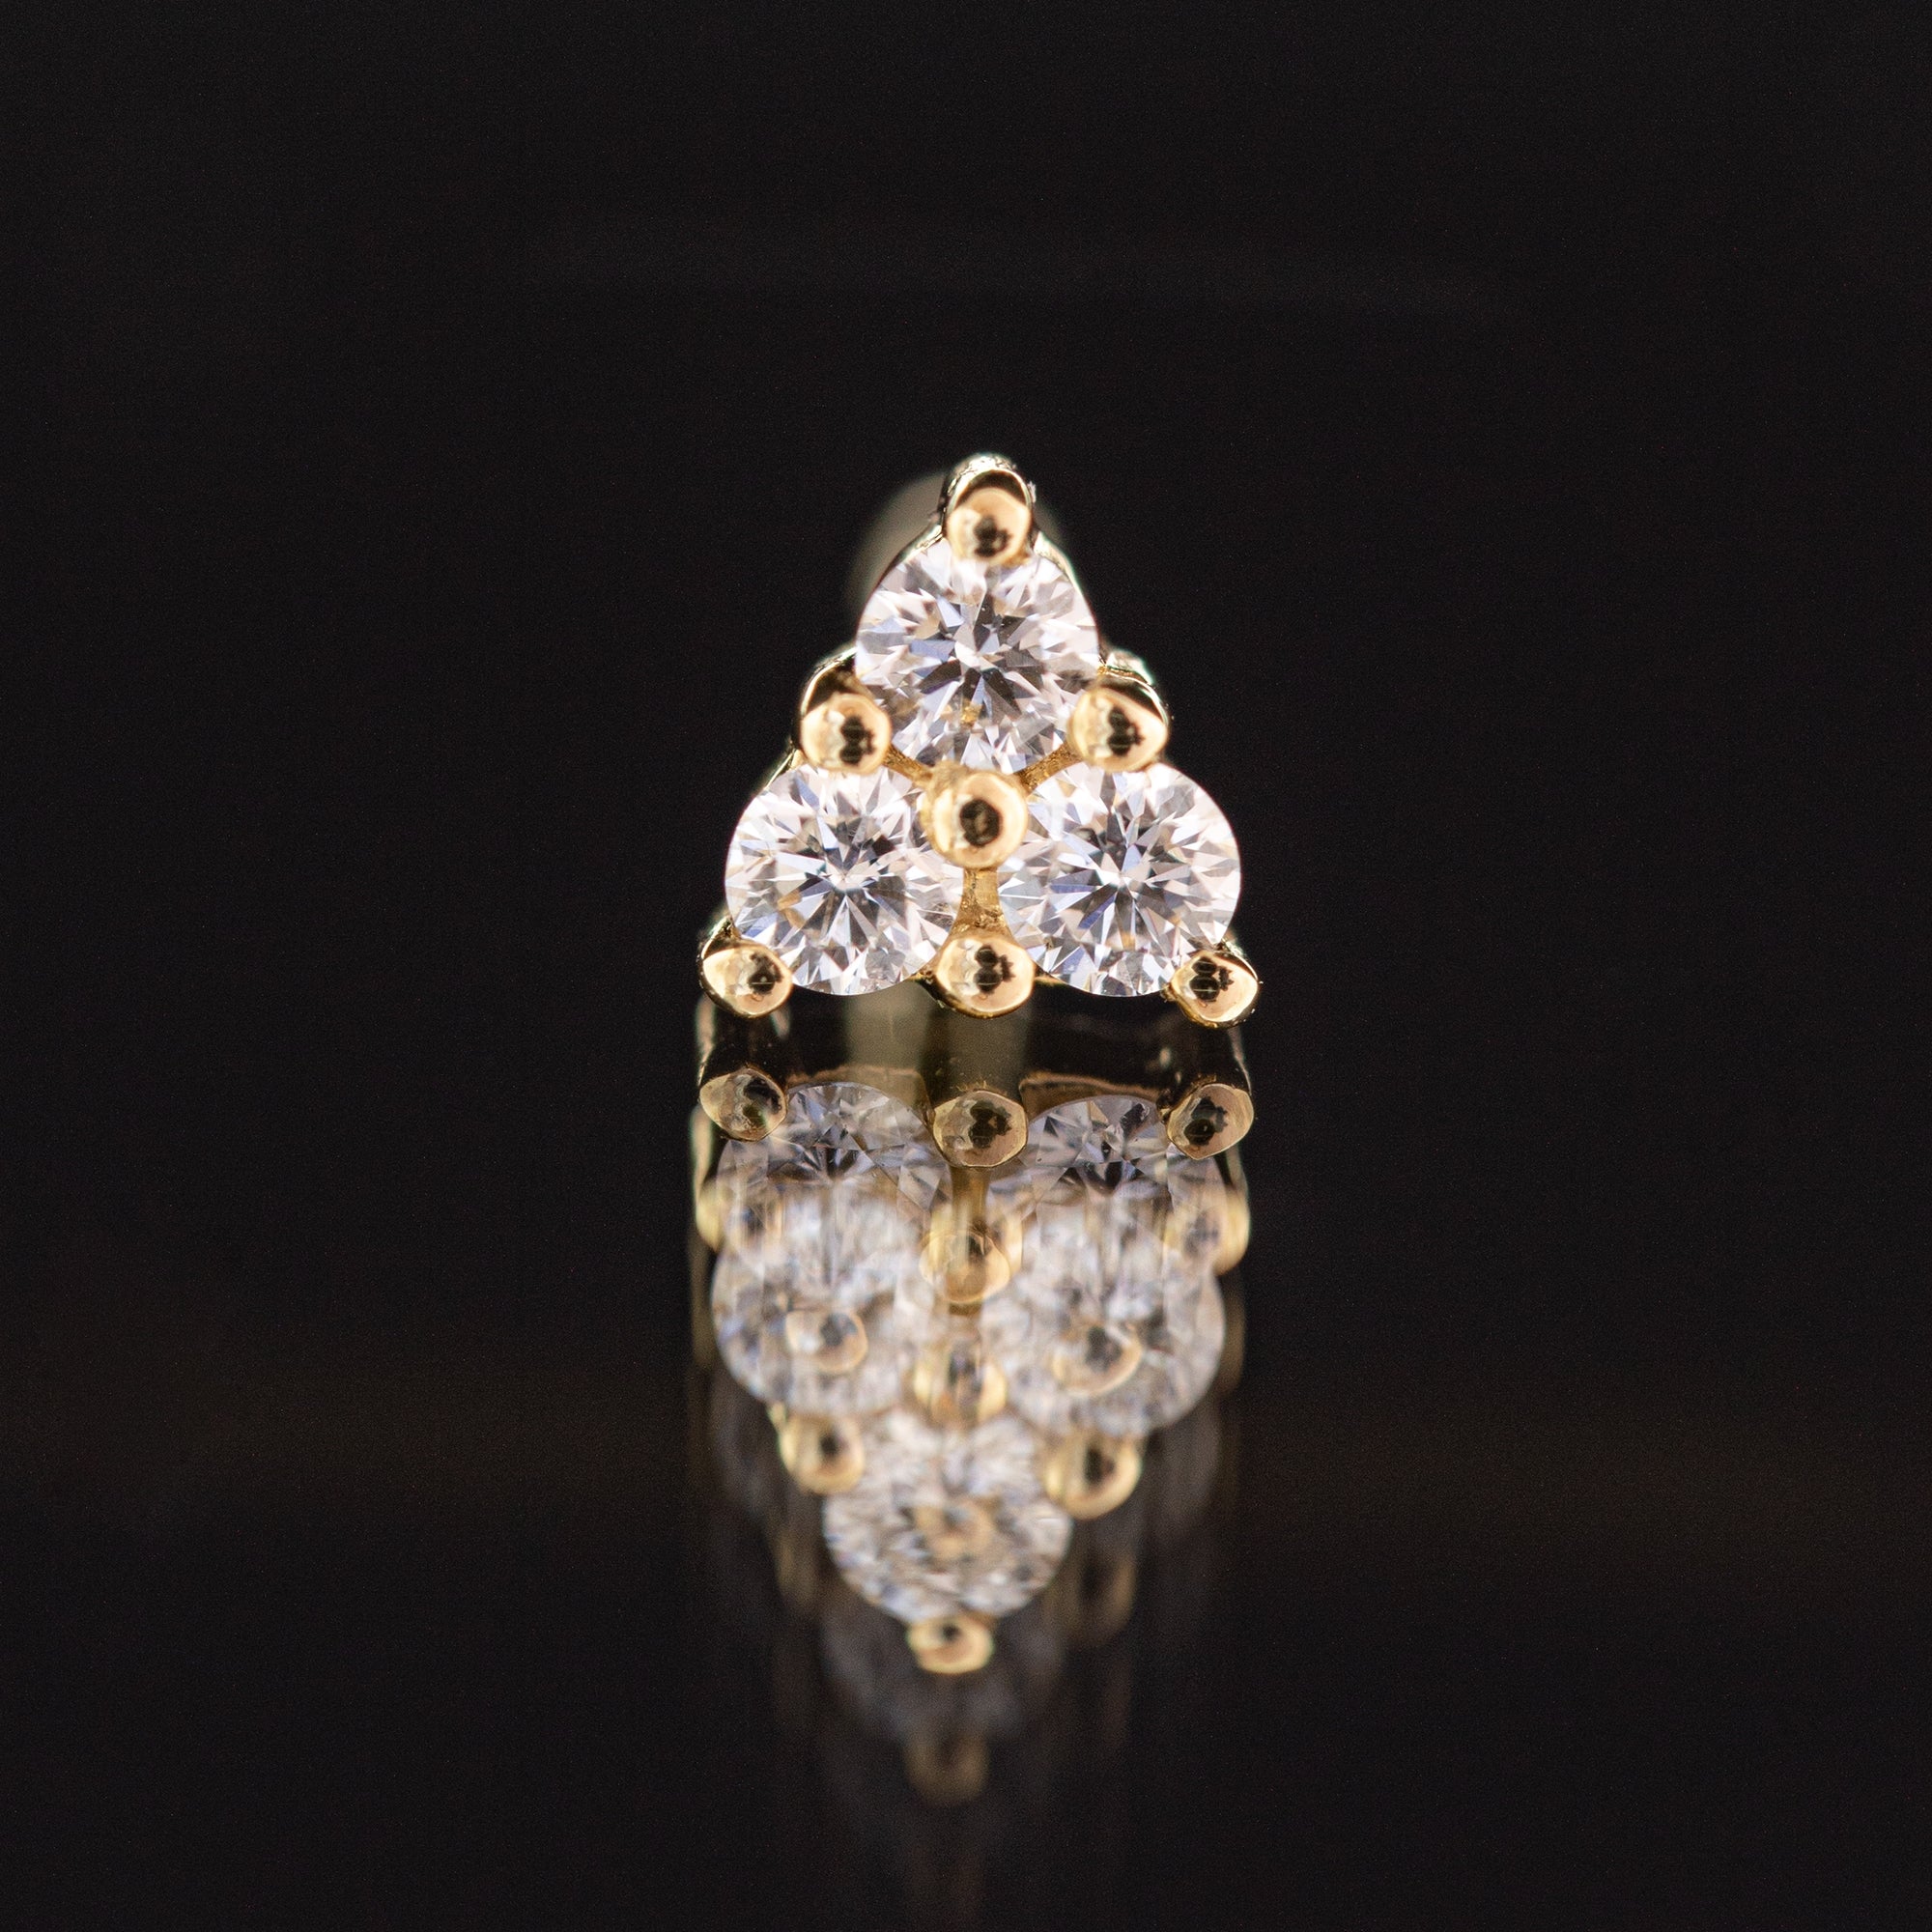 Botón Diamante talla brillante 0.06ct oro 18kt en forma de triángulo. Cada una de los diamantes mide 1.7mm (3 unidades).